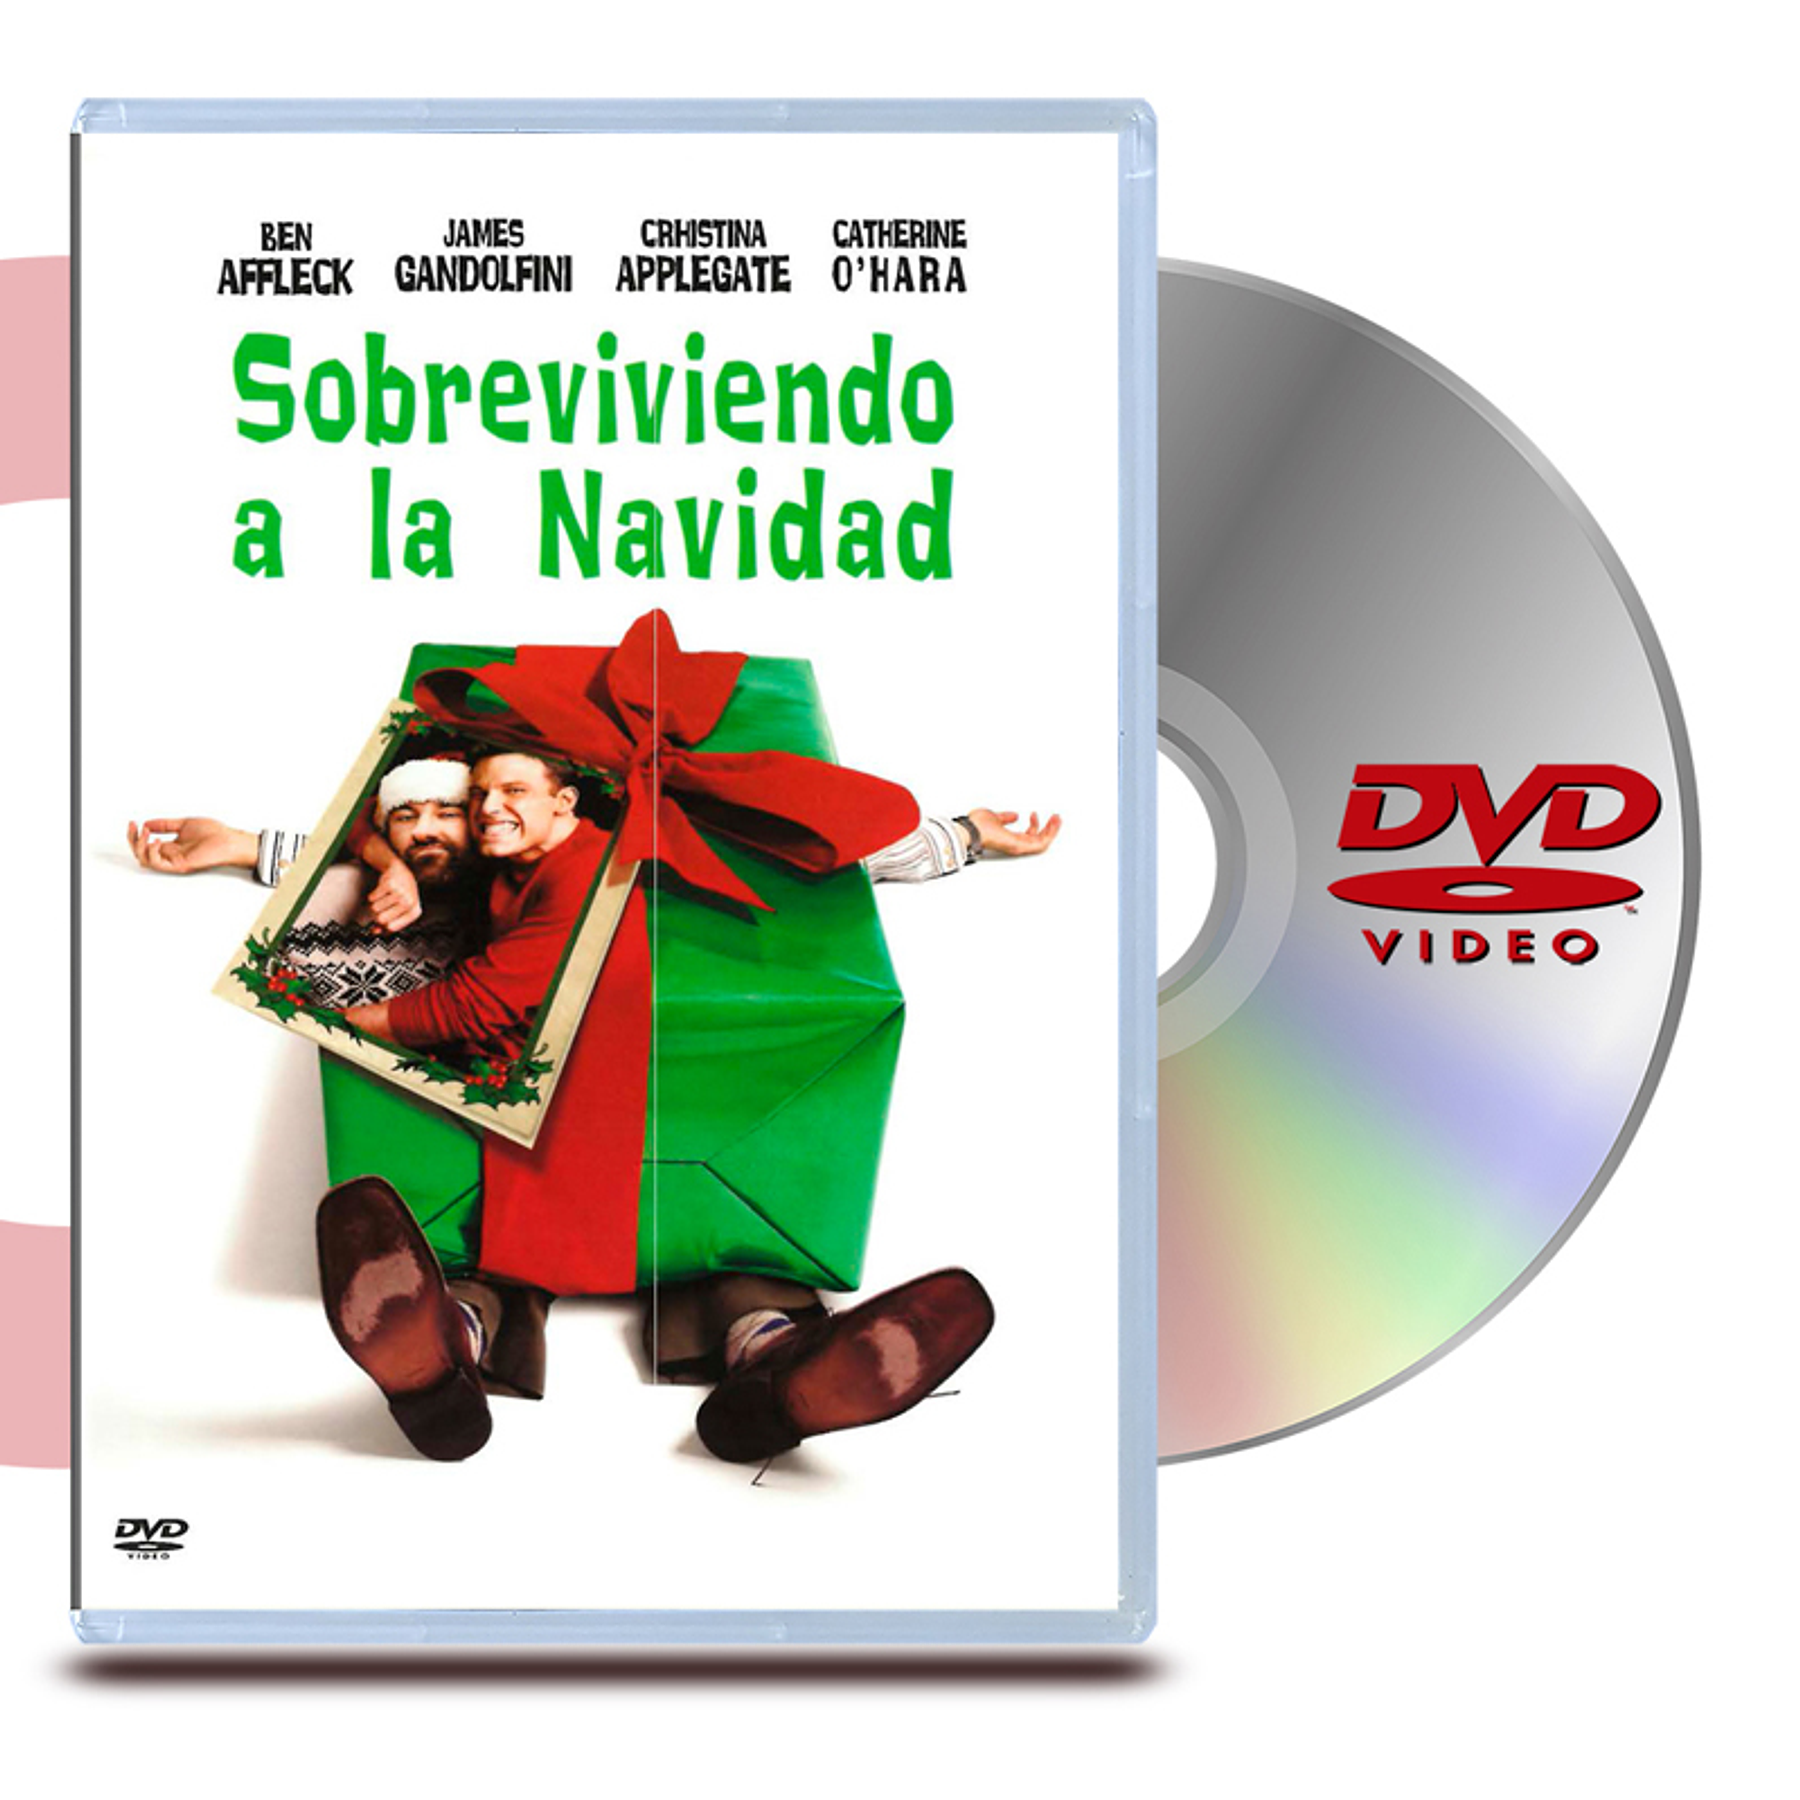 DVD SOBREVIENDO A LA NAVIDAD